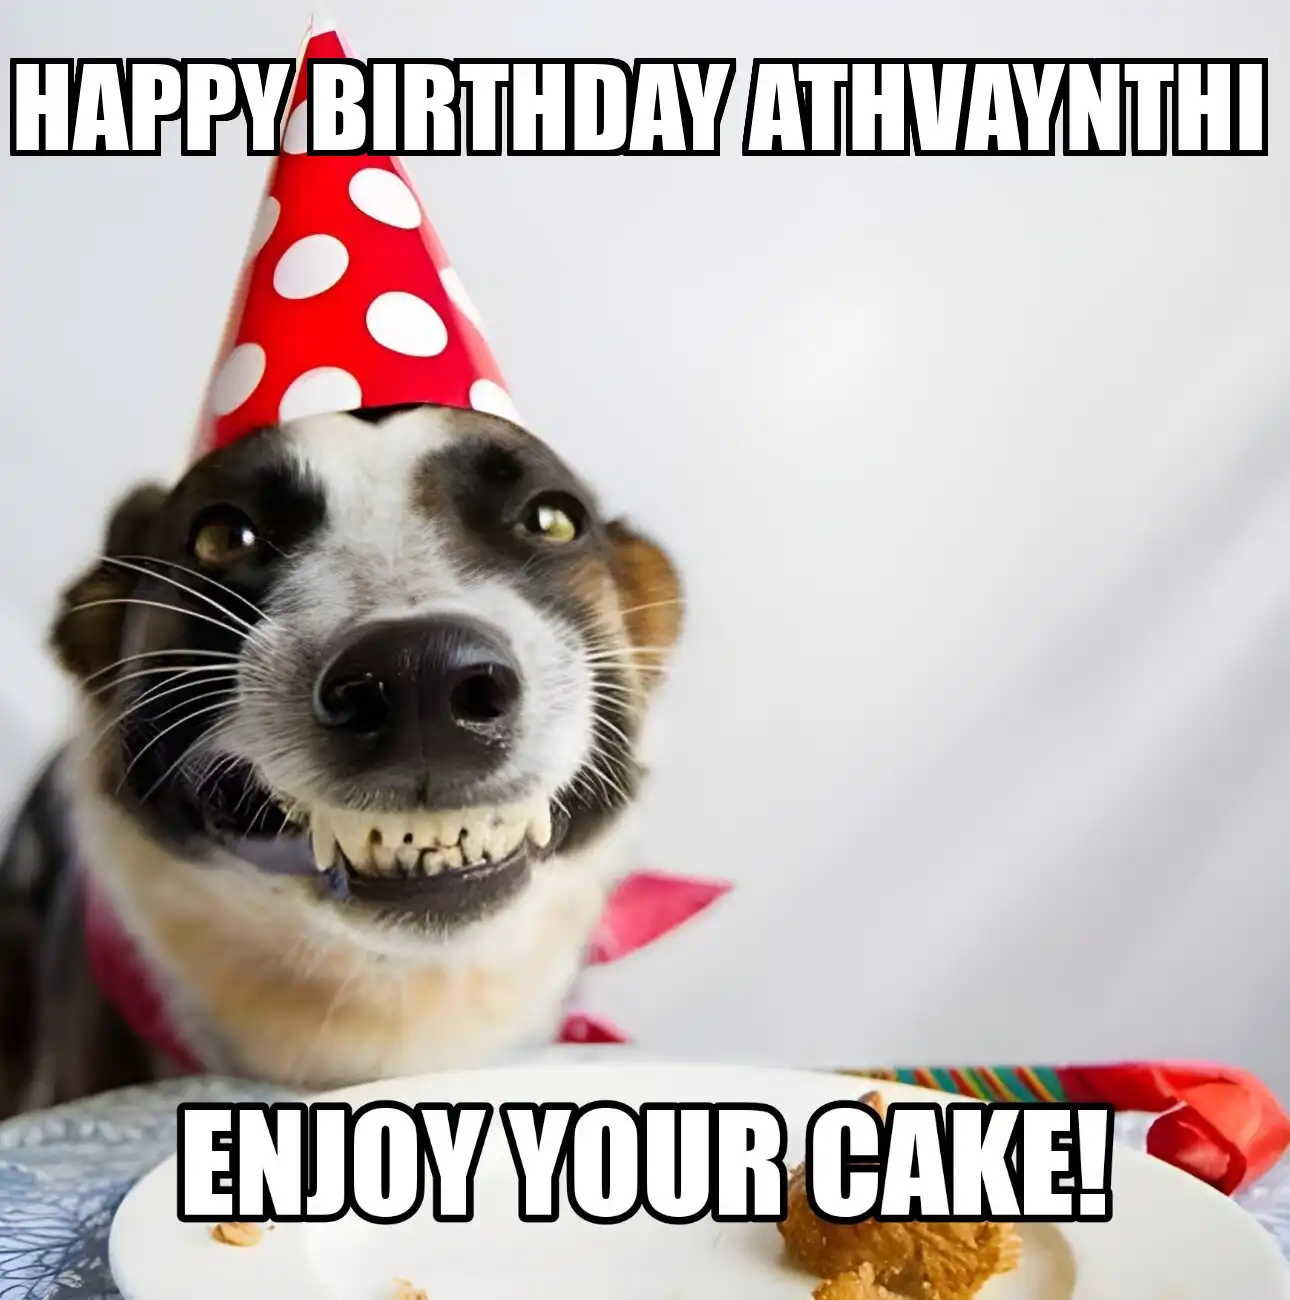 Happy Birthday Athvaynthi Enjoy Your Cake Dog Meme